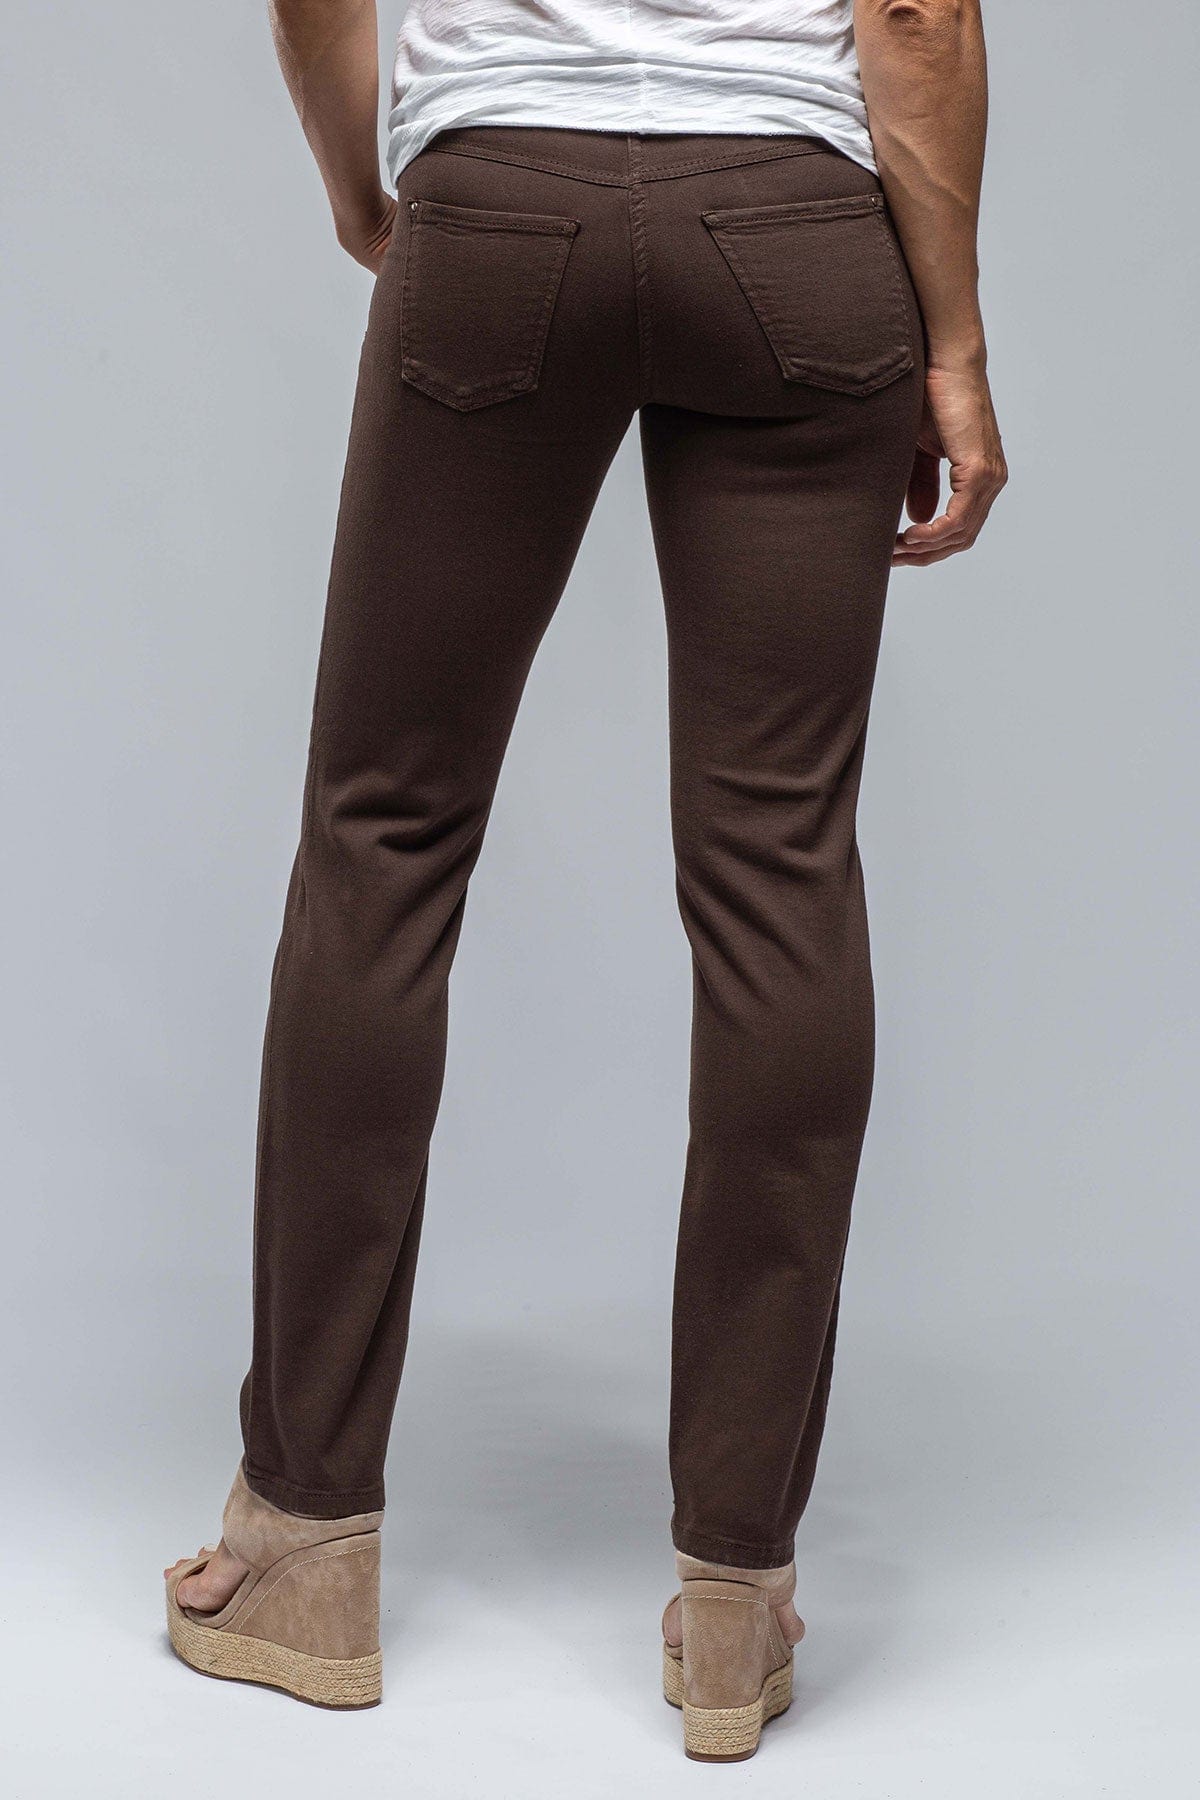 Elleme CURVED STITCH DENIM PANT - Straight leg jeans - brown - Zalando.de